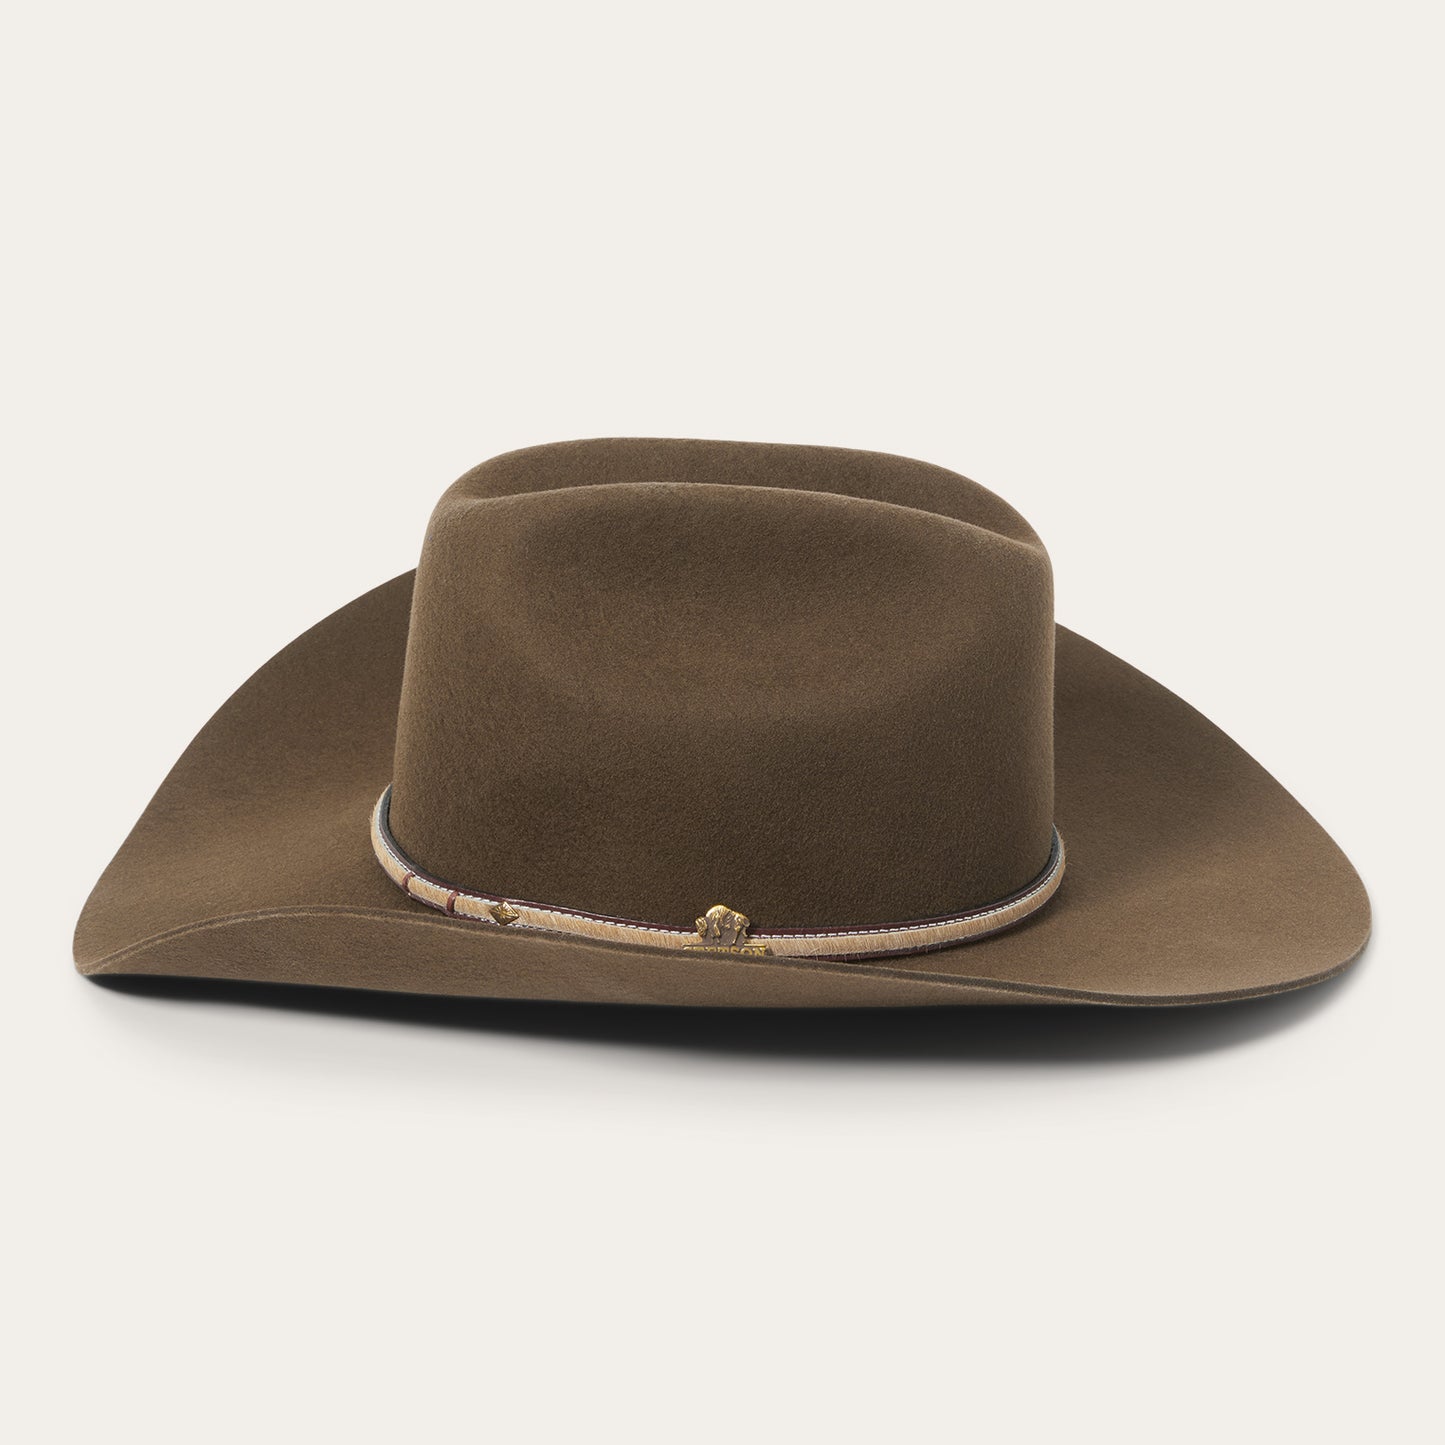 Powder River 4x Cowboy Hat Stetson